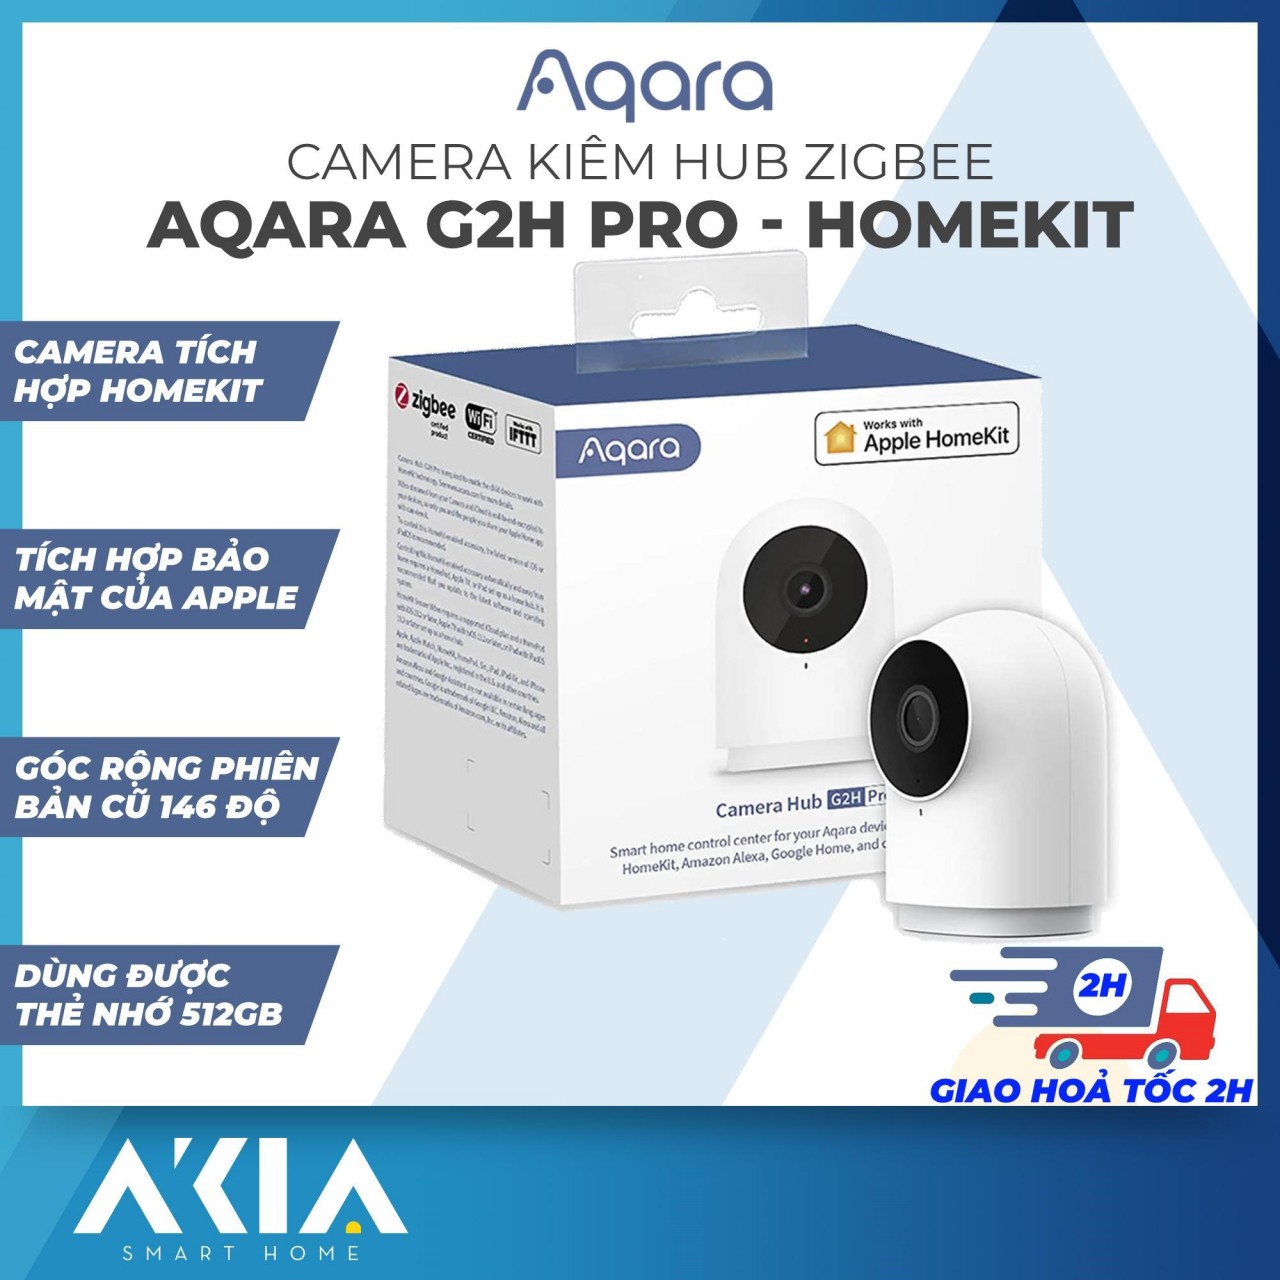 AKIA cung cấp giải pháp cho sự an toàn với hàng loạt các thiết bị Camera giám sát hiện đại.